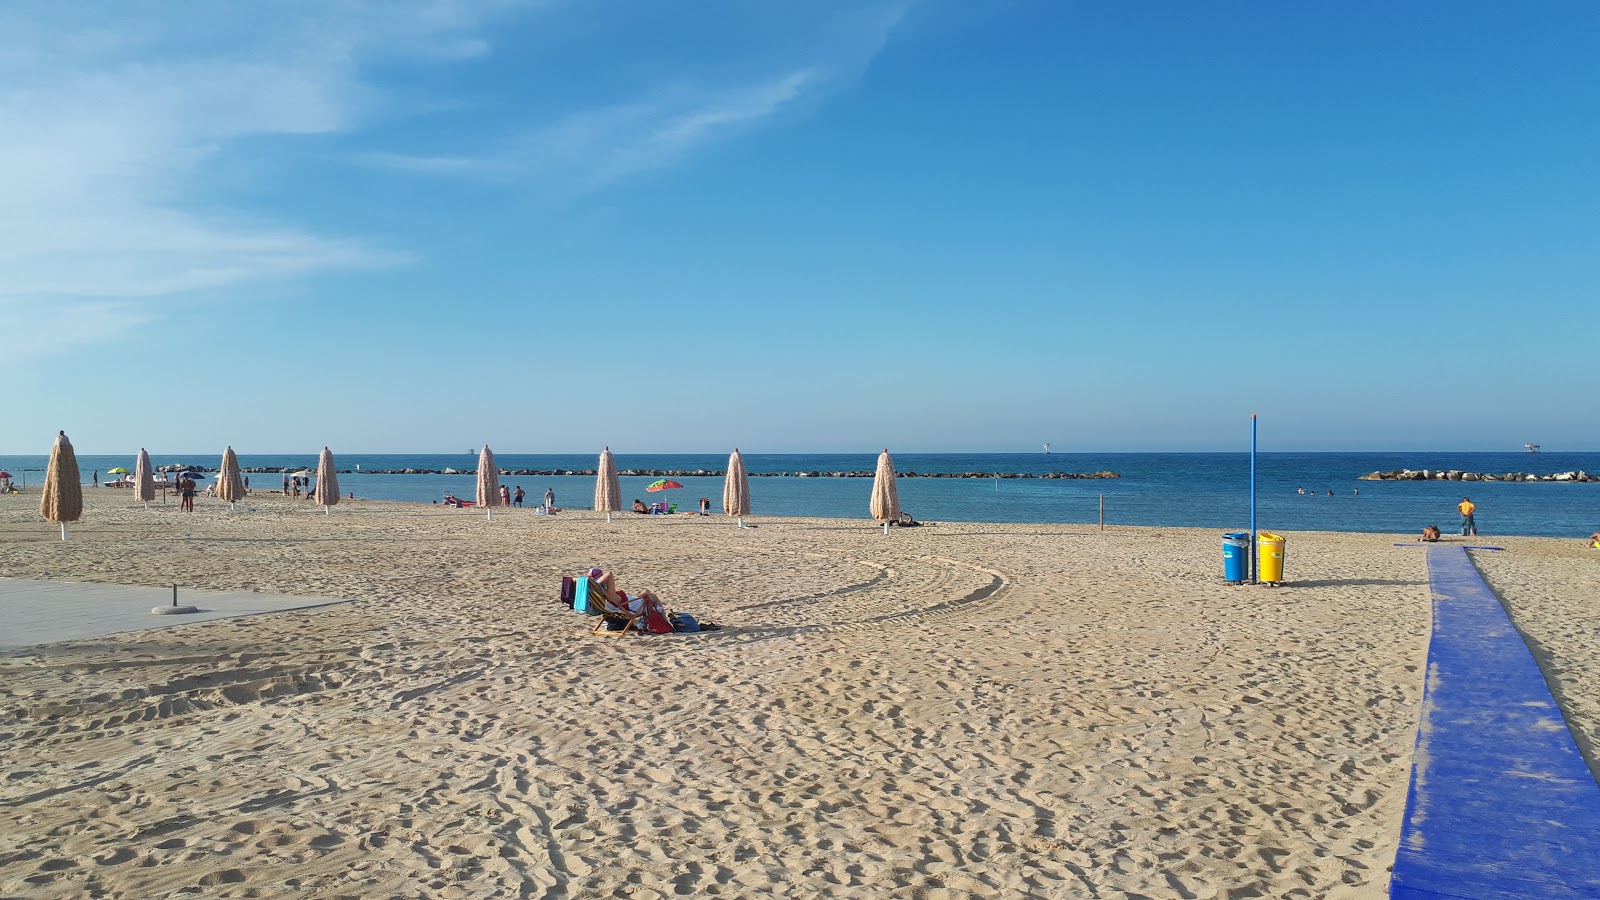 Spiaggia Le Morge'in fotoğrafı plaj tatil beldesi alanı